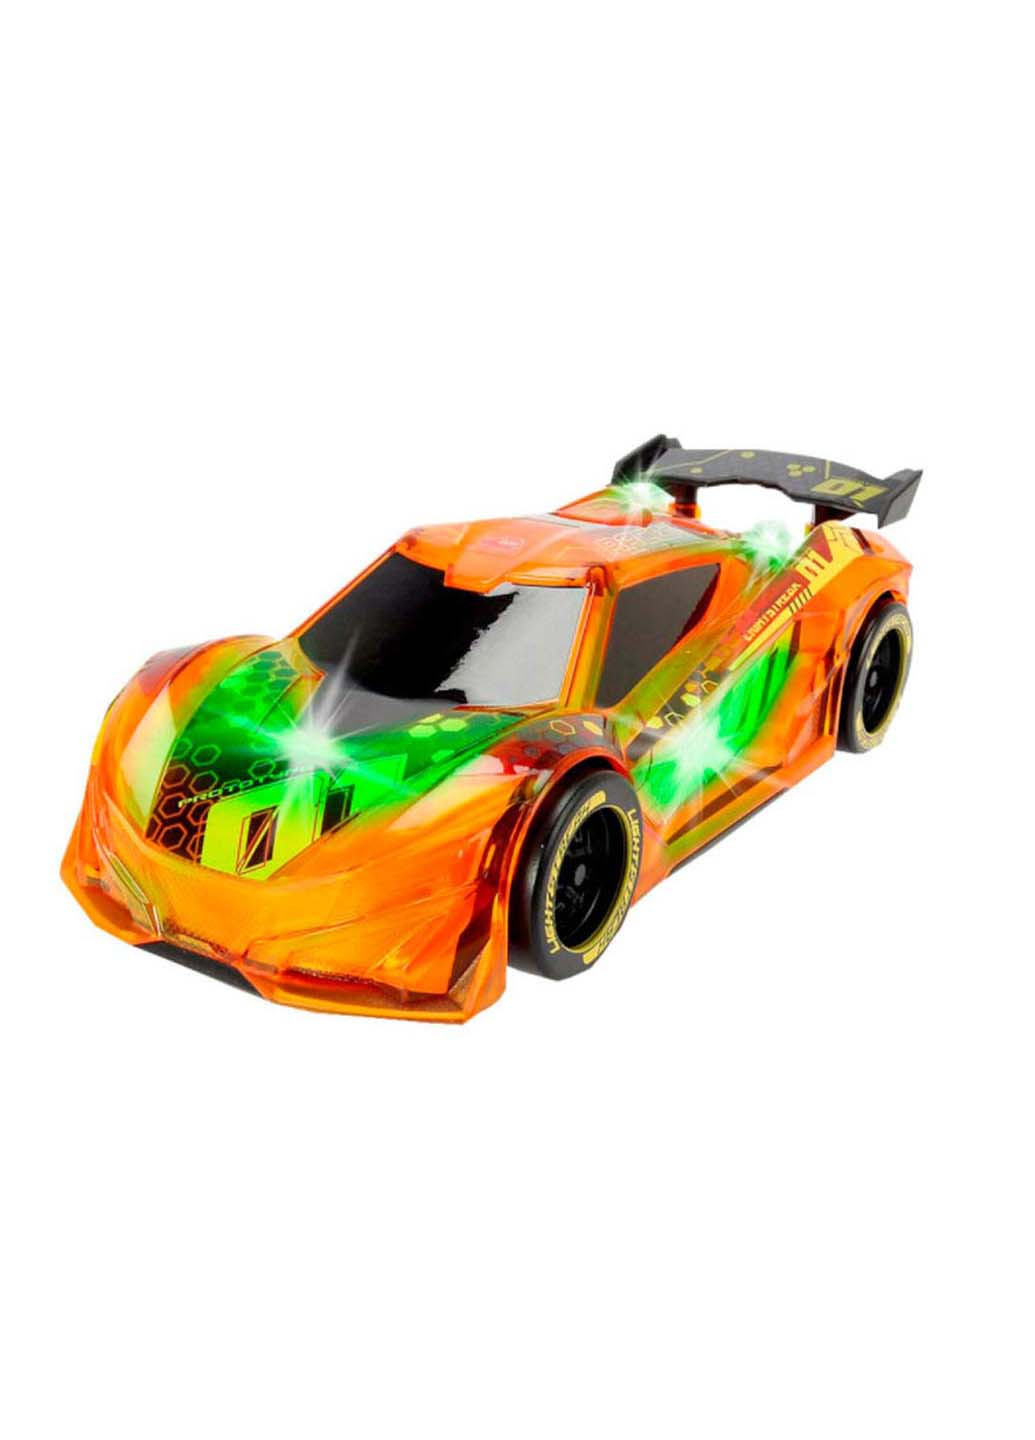 Игрушечная машинка меняющая цвет Сполохи света Racer 20 см Dickie toys (258843000)